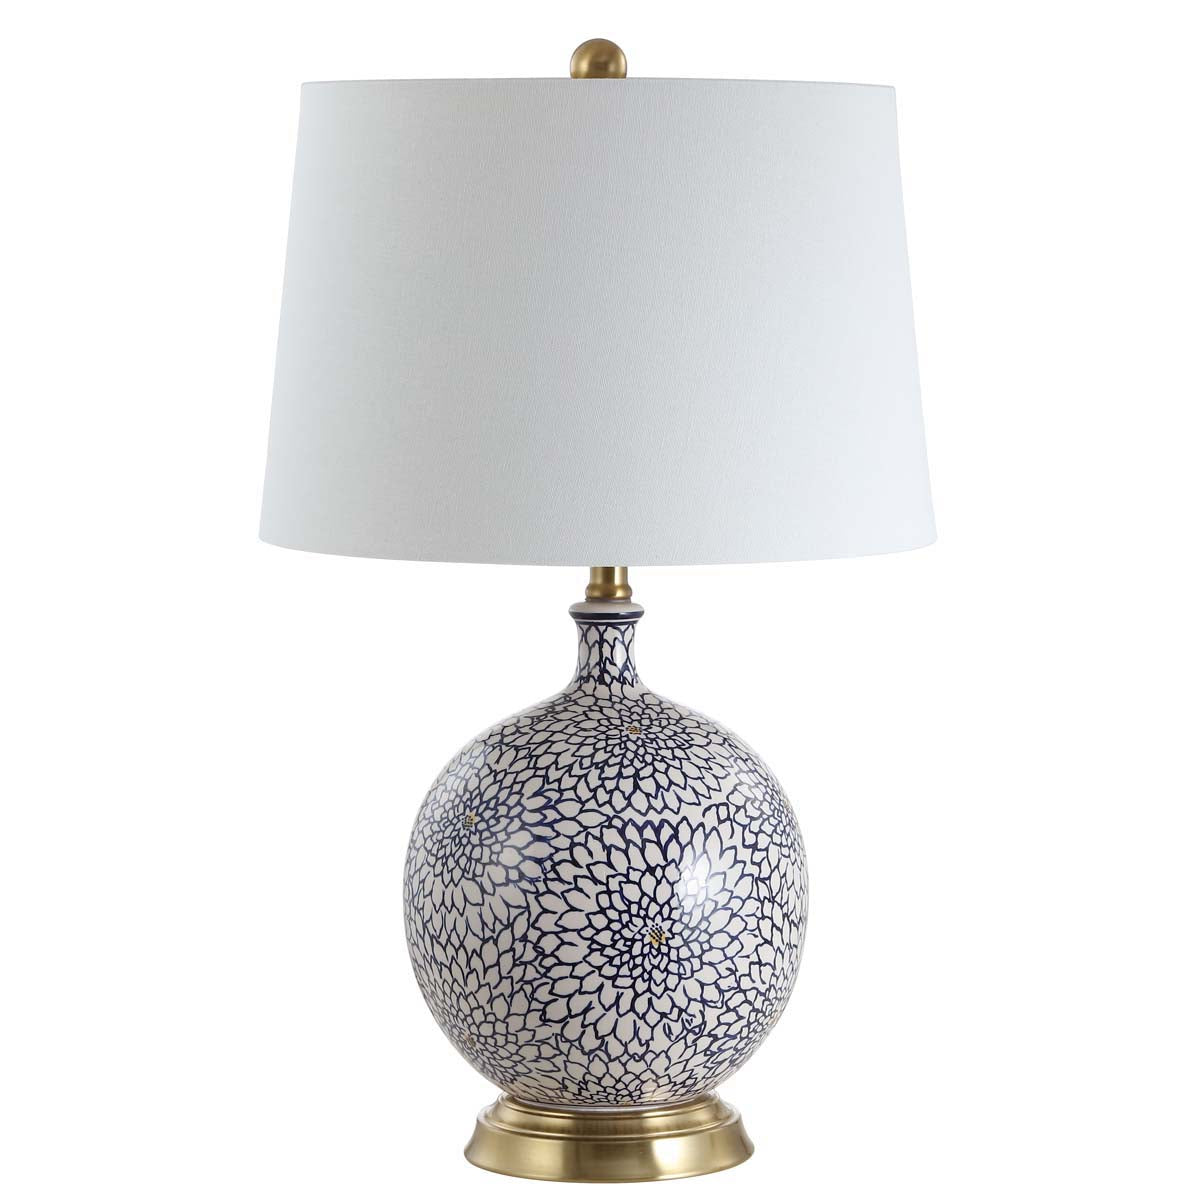 Safavieh Orianna Table Lamp, TBL4104